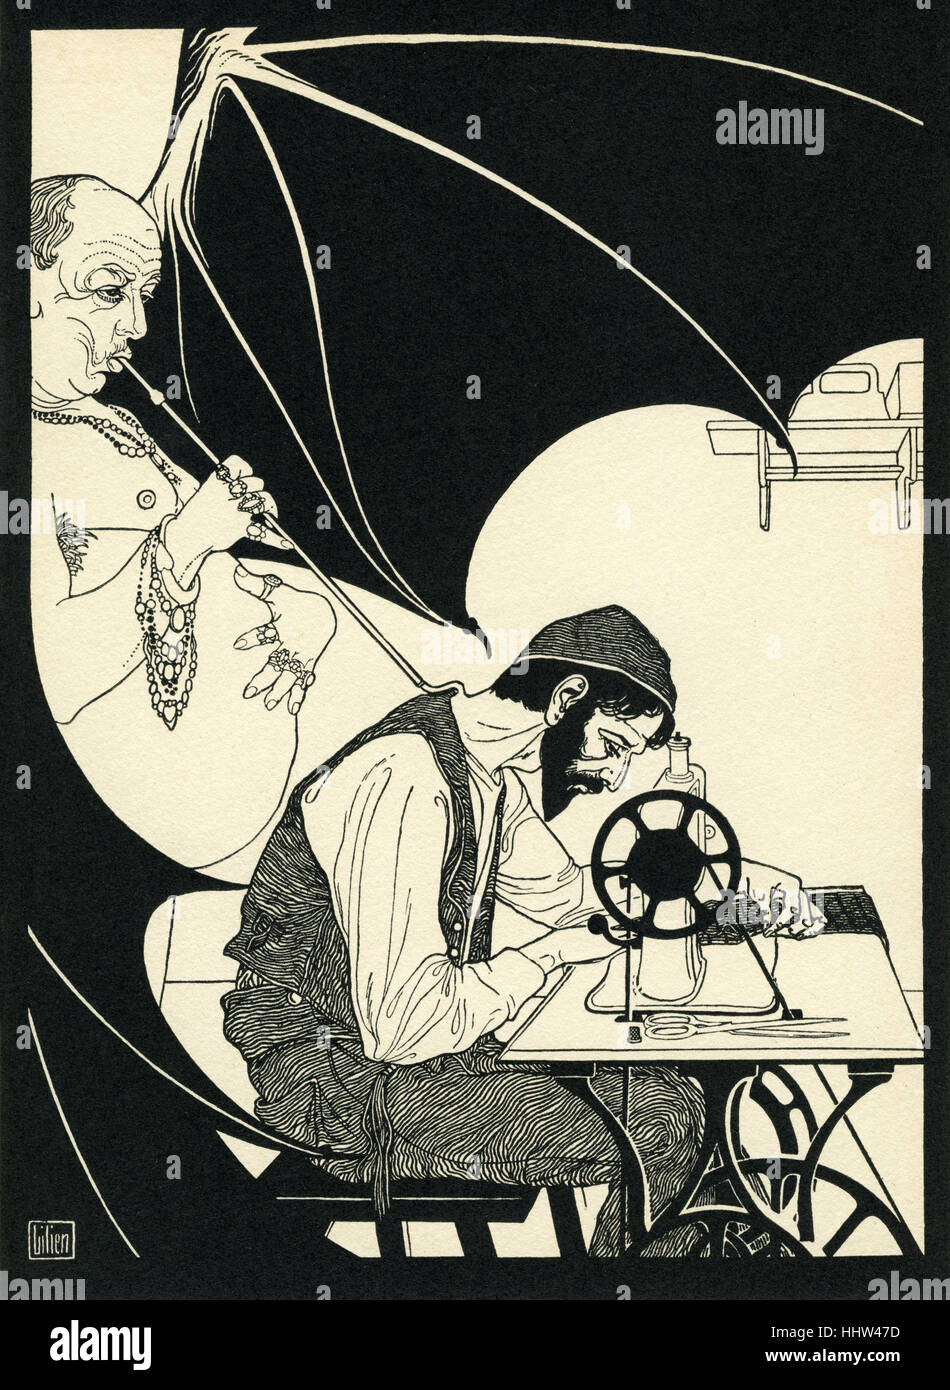 Efraín Moisés Lilien ilustración del poema "An der Nähmaschine' (con la máquina de coser) . Muestra trabajador judío en la costura Foto de stock